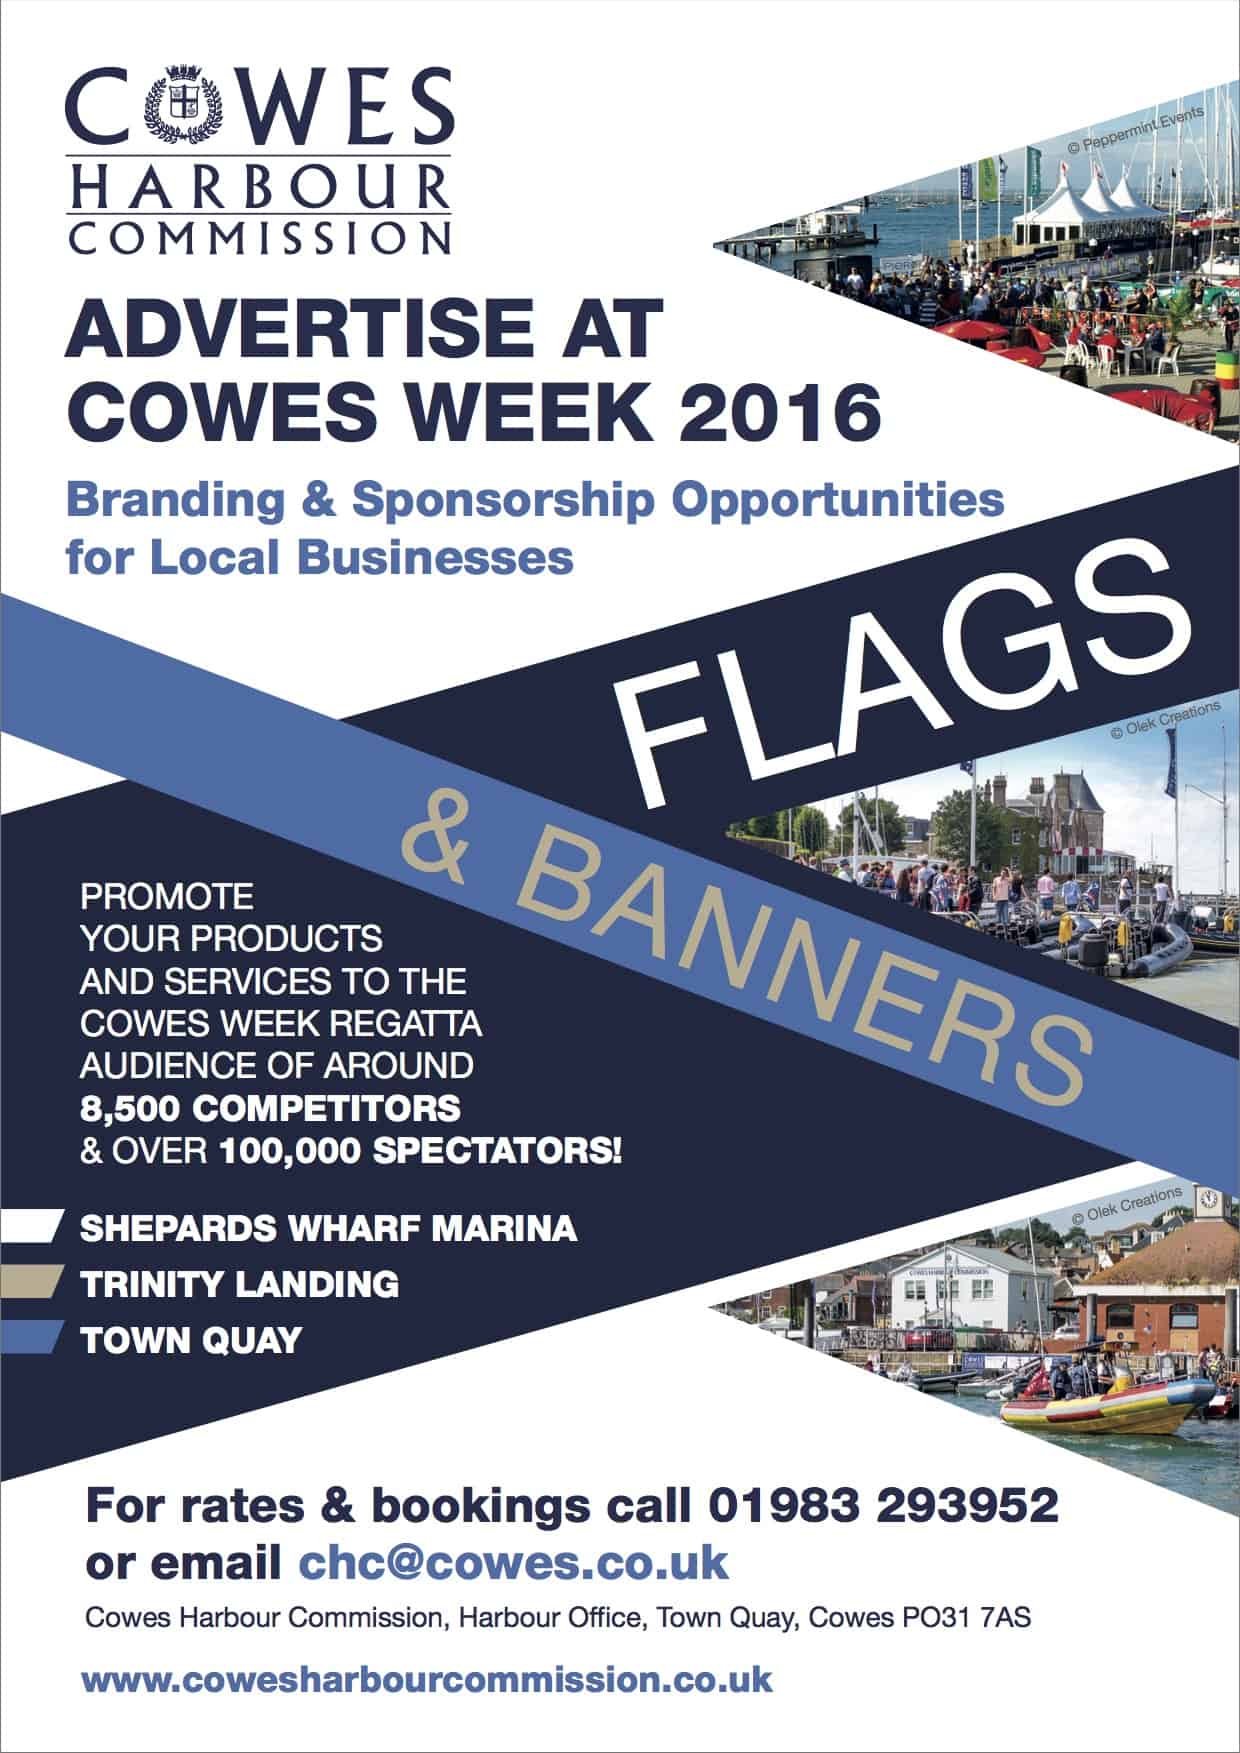 Advertise at Cowes Week 2016